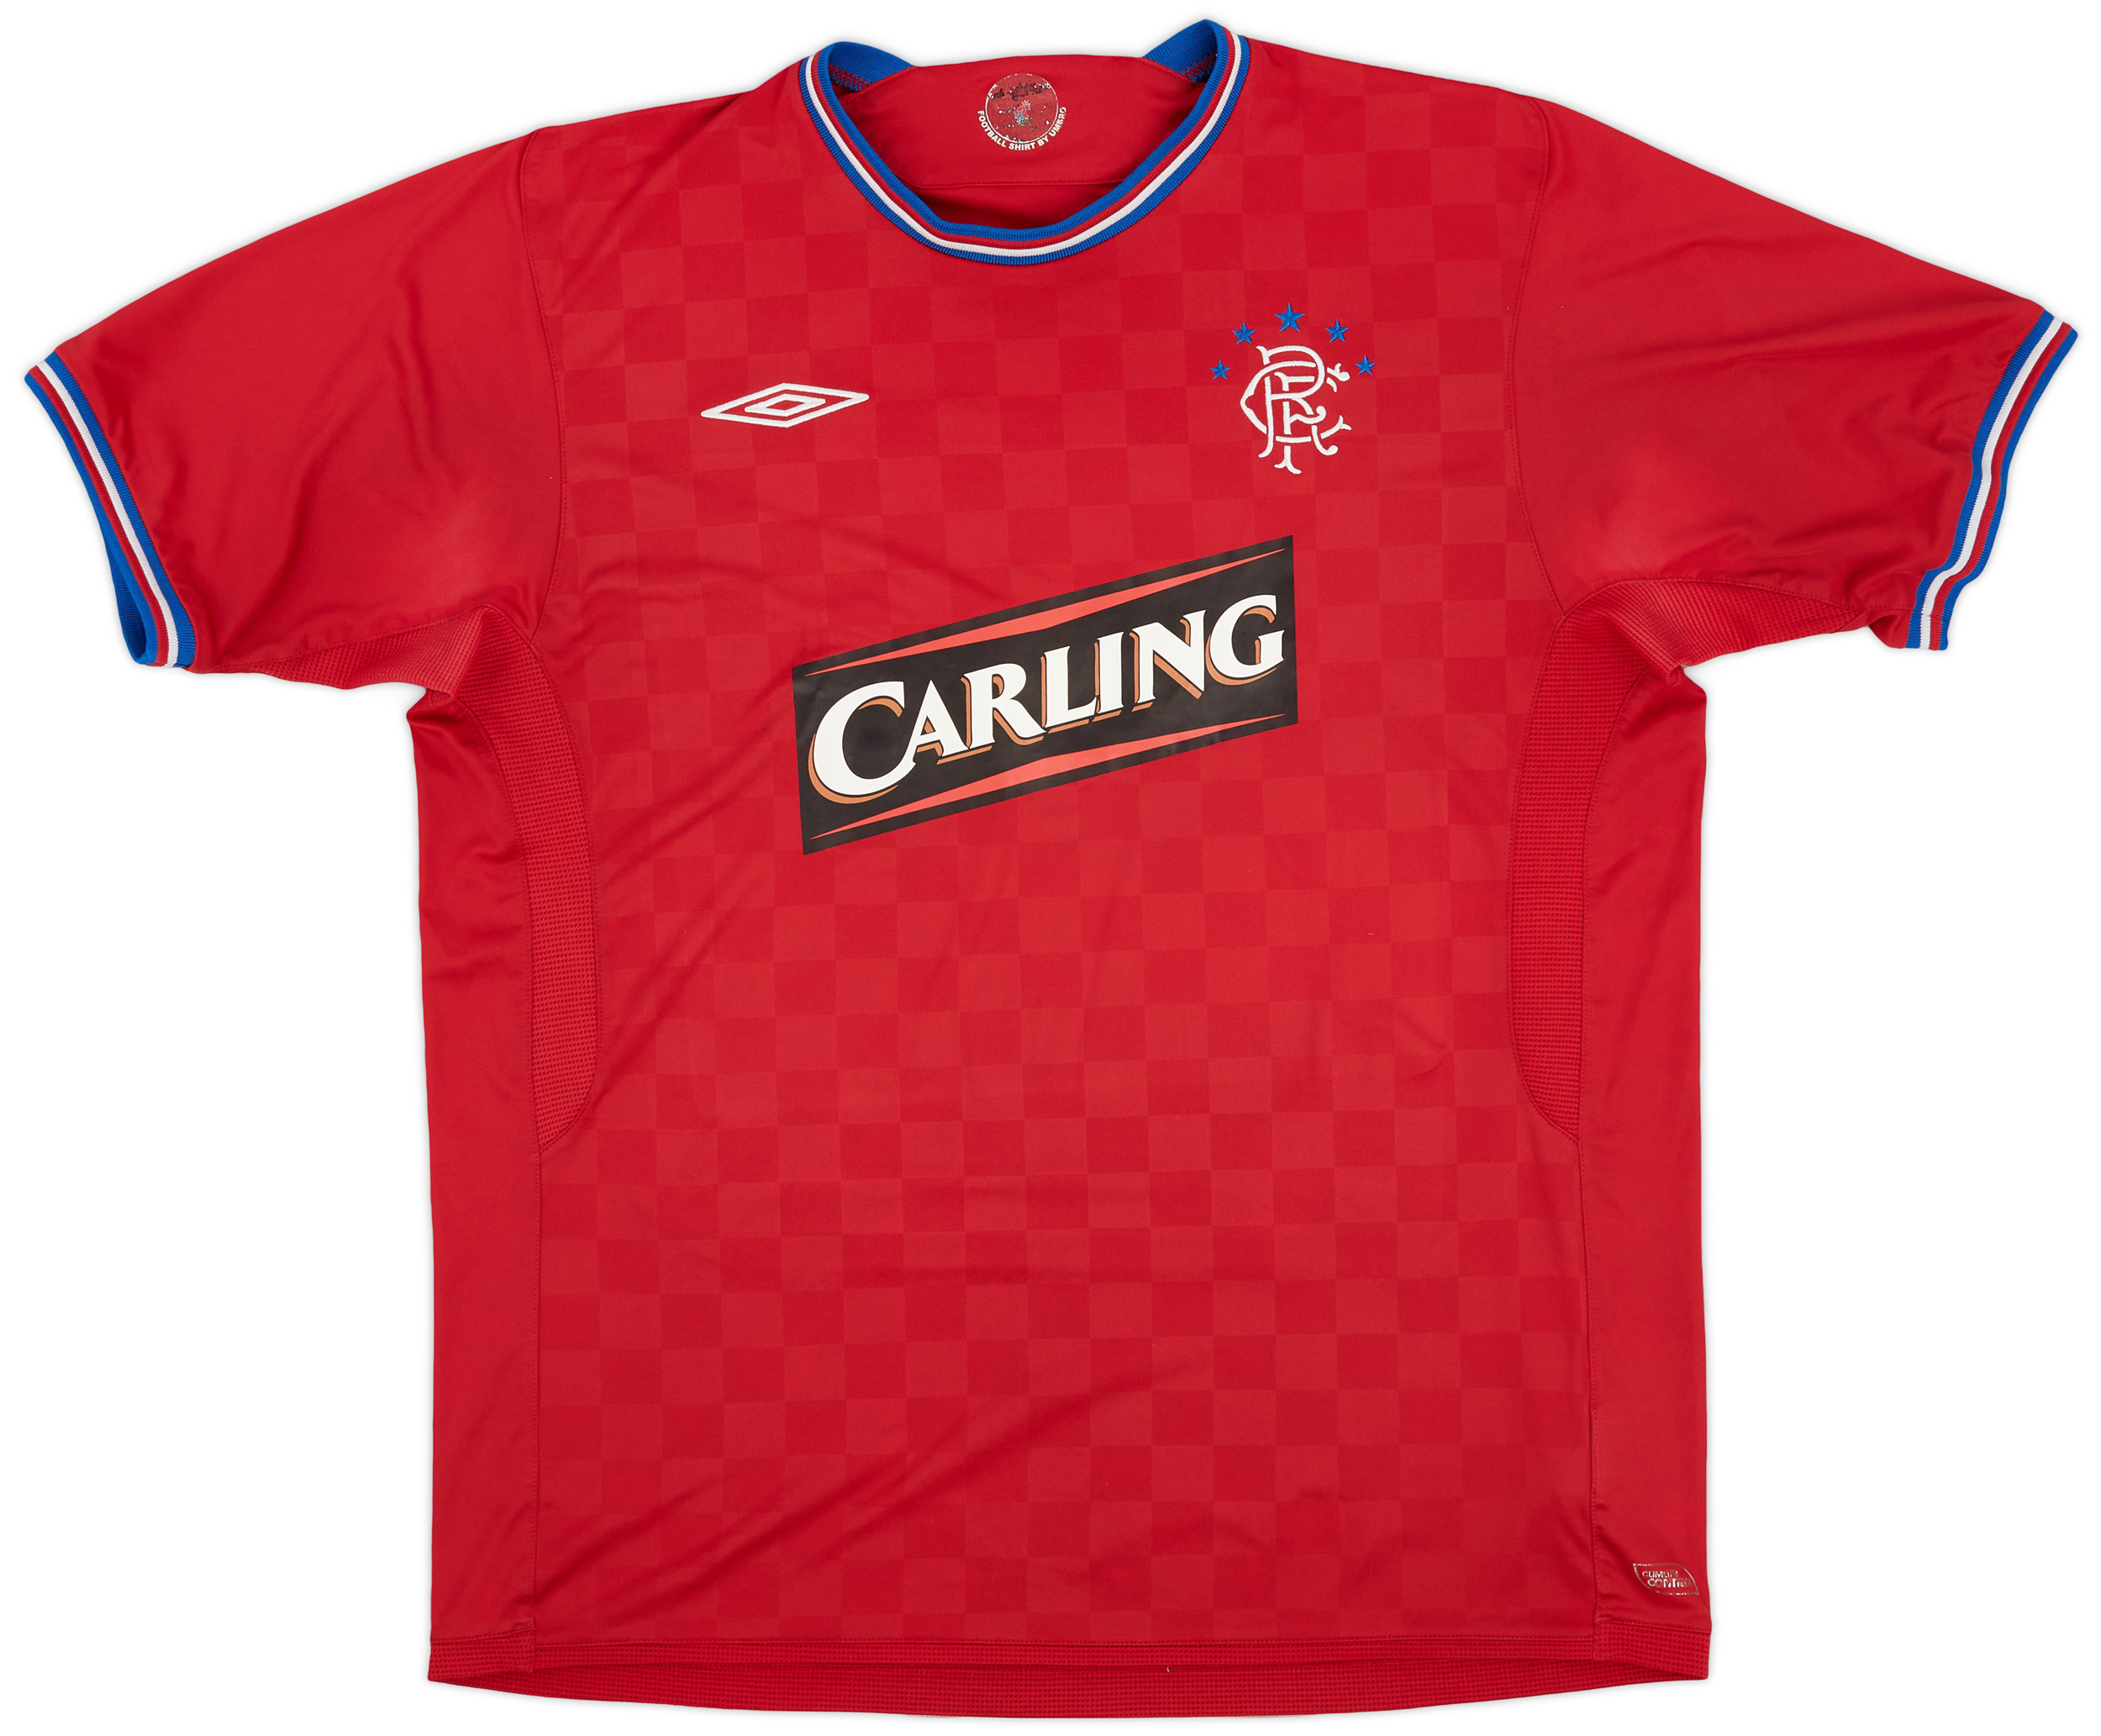 2009-10 Rangers Away Shirt - 9/10 - ()